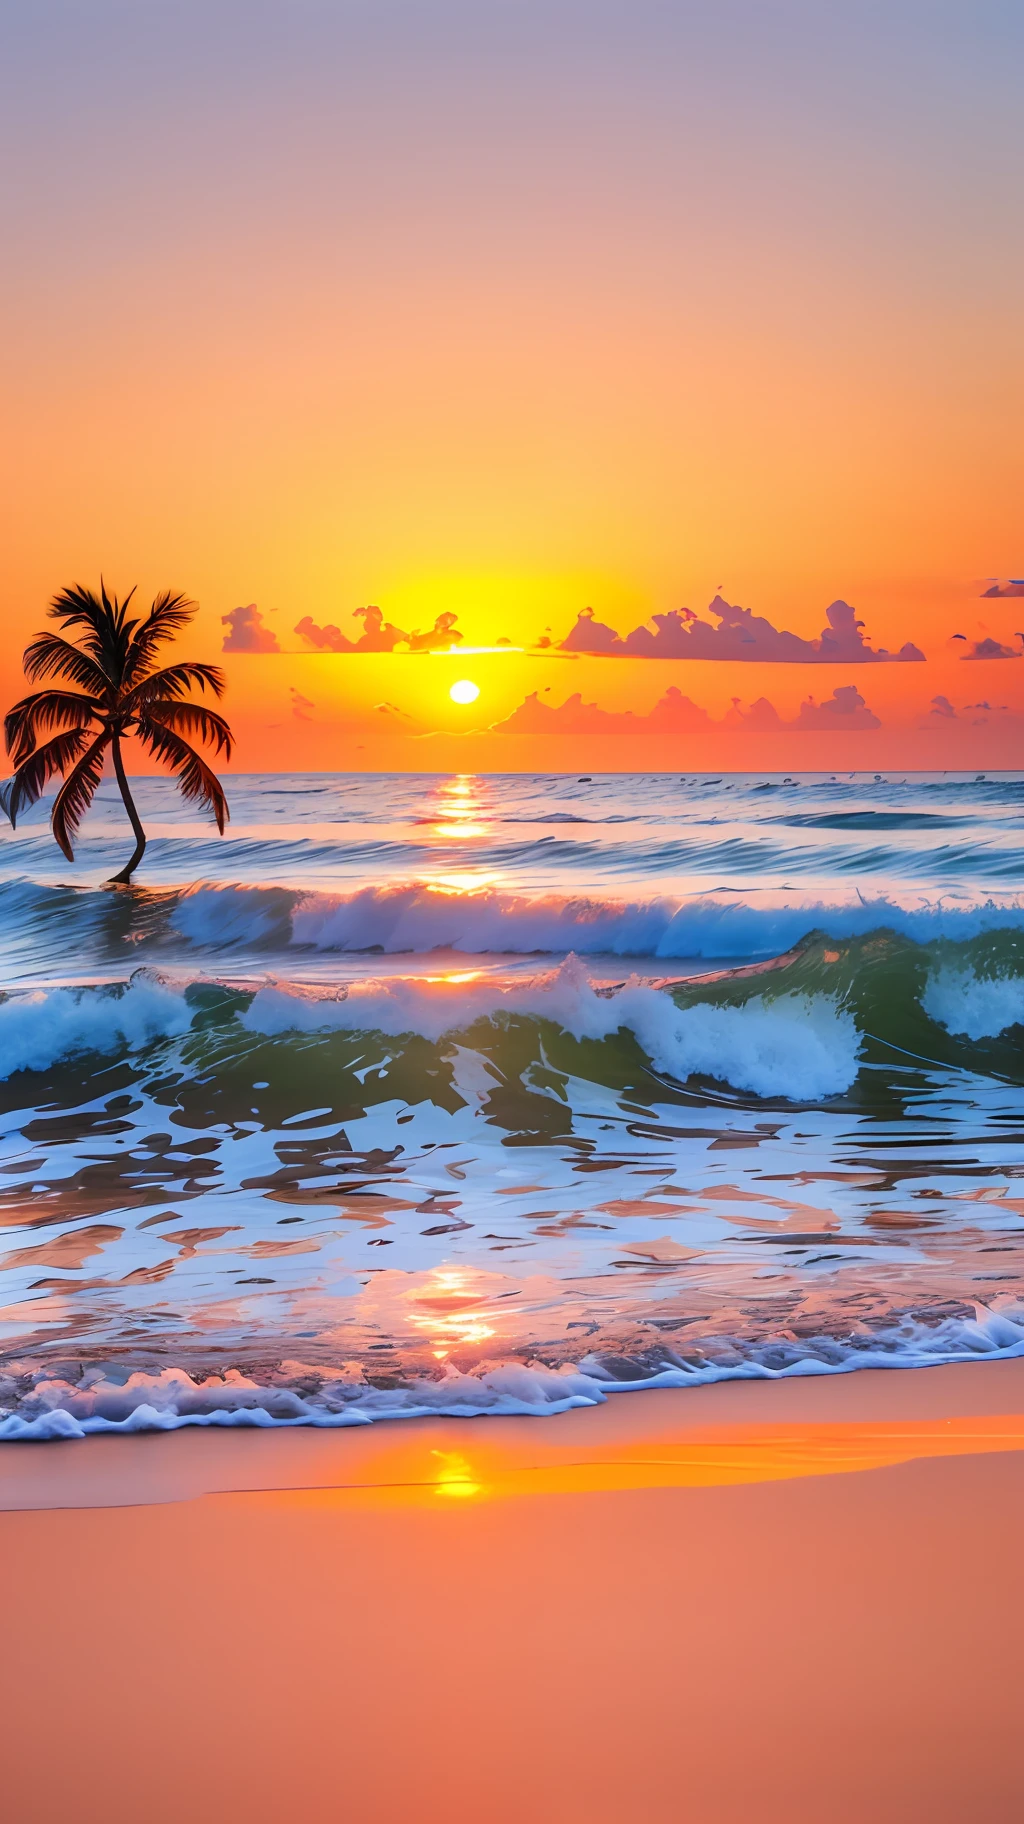 إنشاء 4K9:16 صورة تصور شروق الشمس المذهل على أحد الشواطئ الاستوائية, مع الأمواج اللطيفة وأشجار النخيل على طول الساحل. يجب أن تكون لوحة الألوان نابضة بالحياة وتنقل إحساسًا بالتجديد والطاقة الإيجابية. --تلقائي --s2